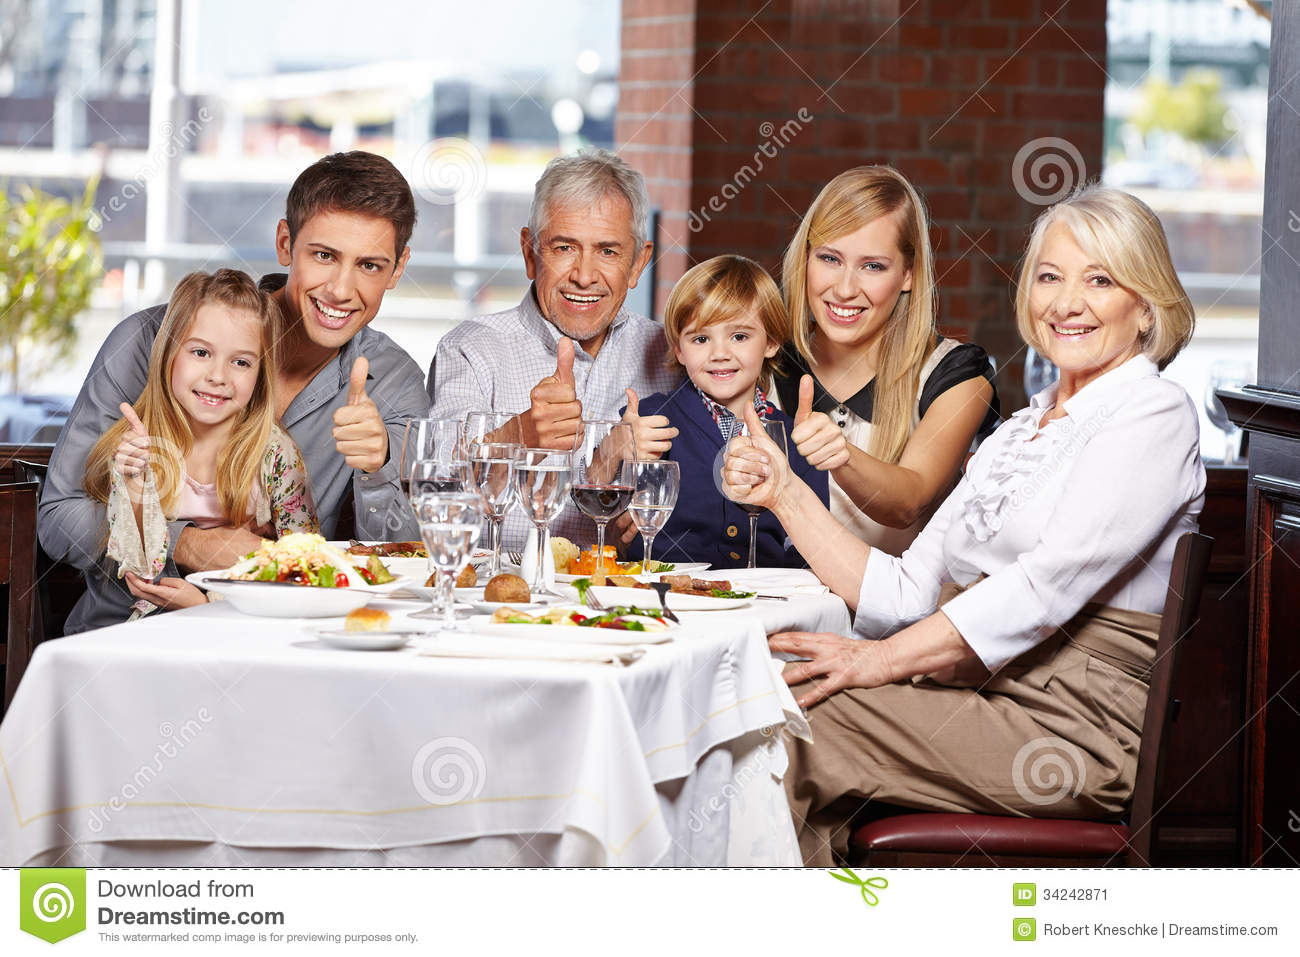 Family Restaurant Clipart Family In Restaurant Holding